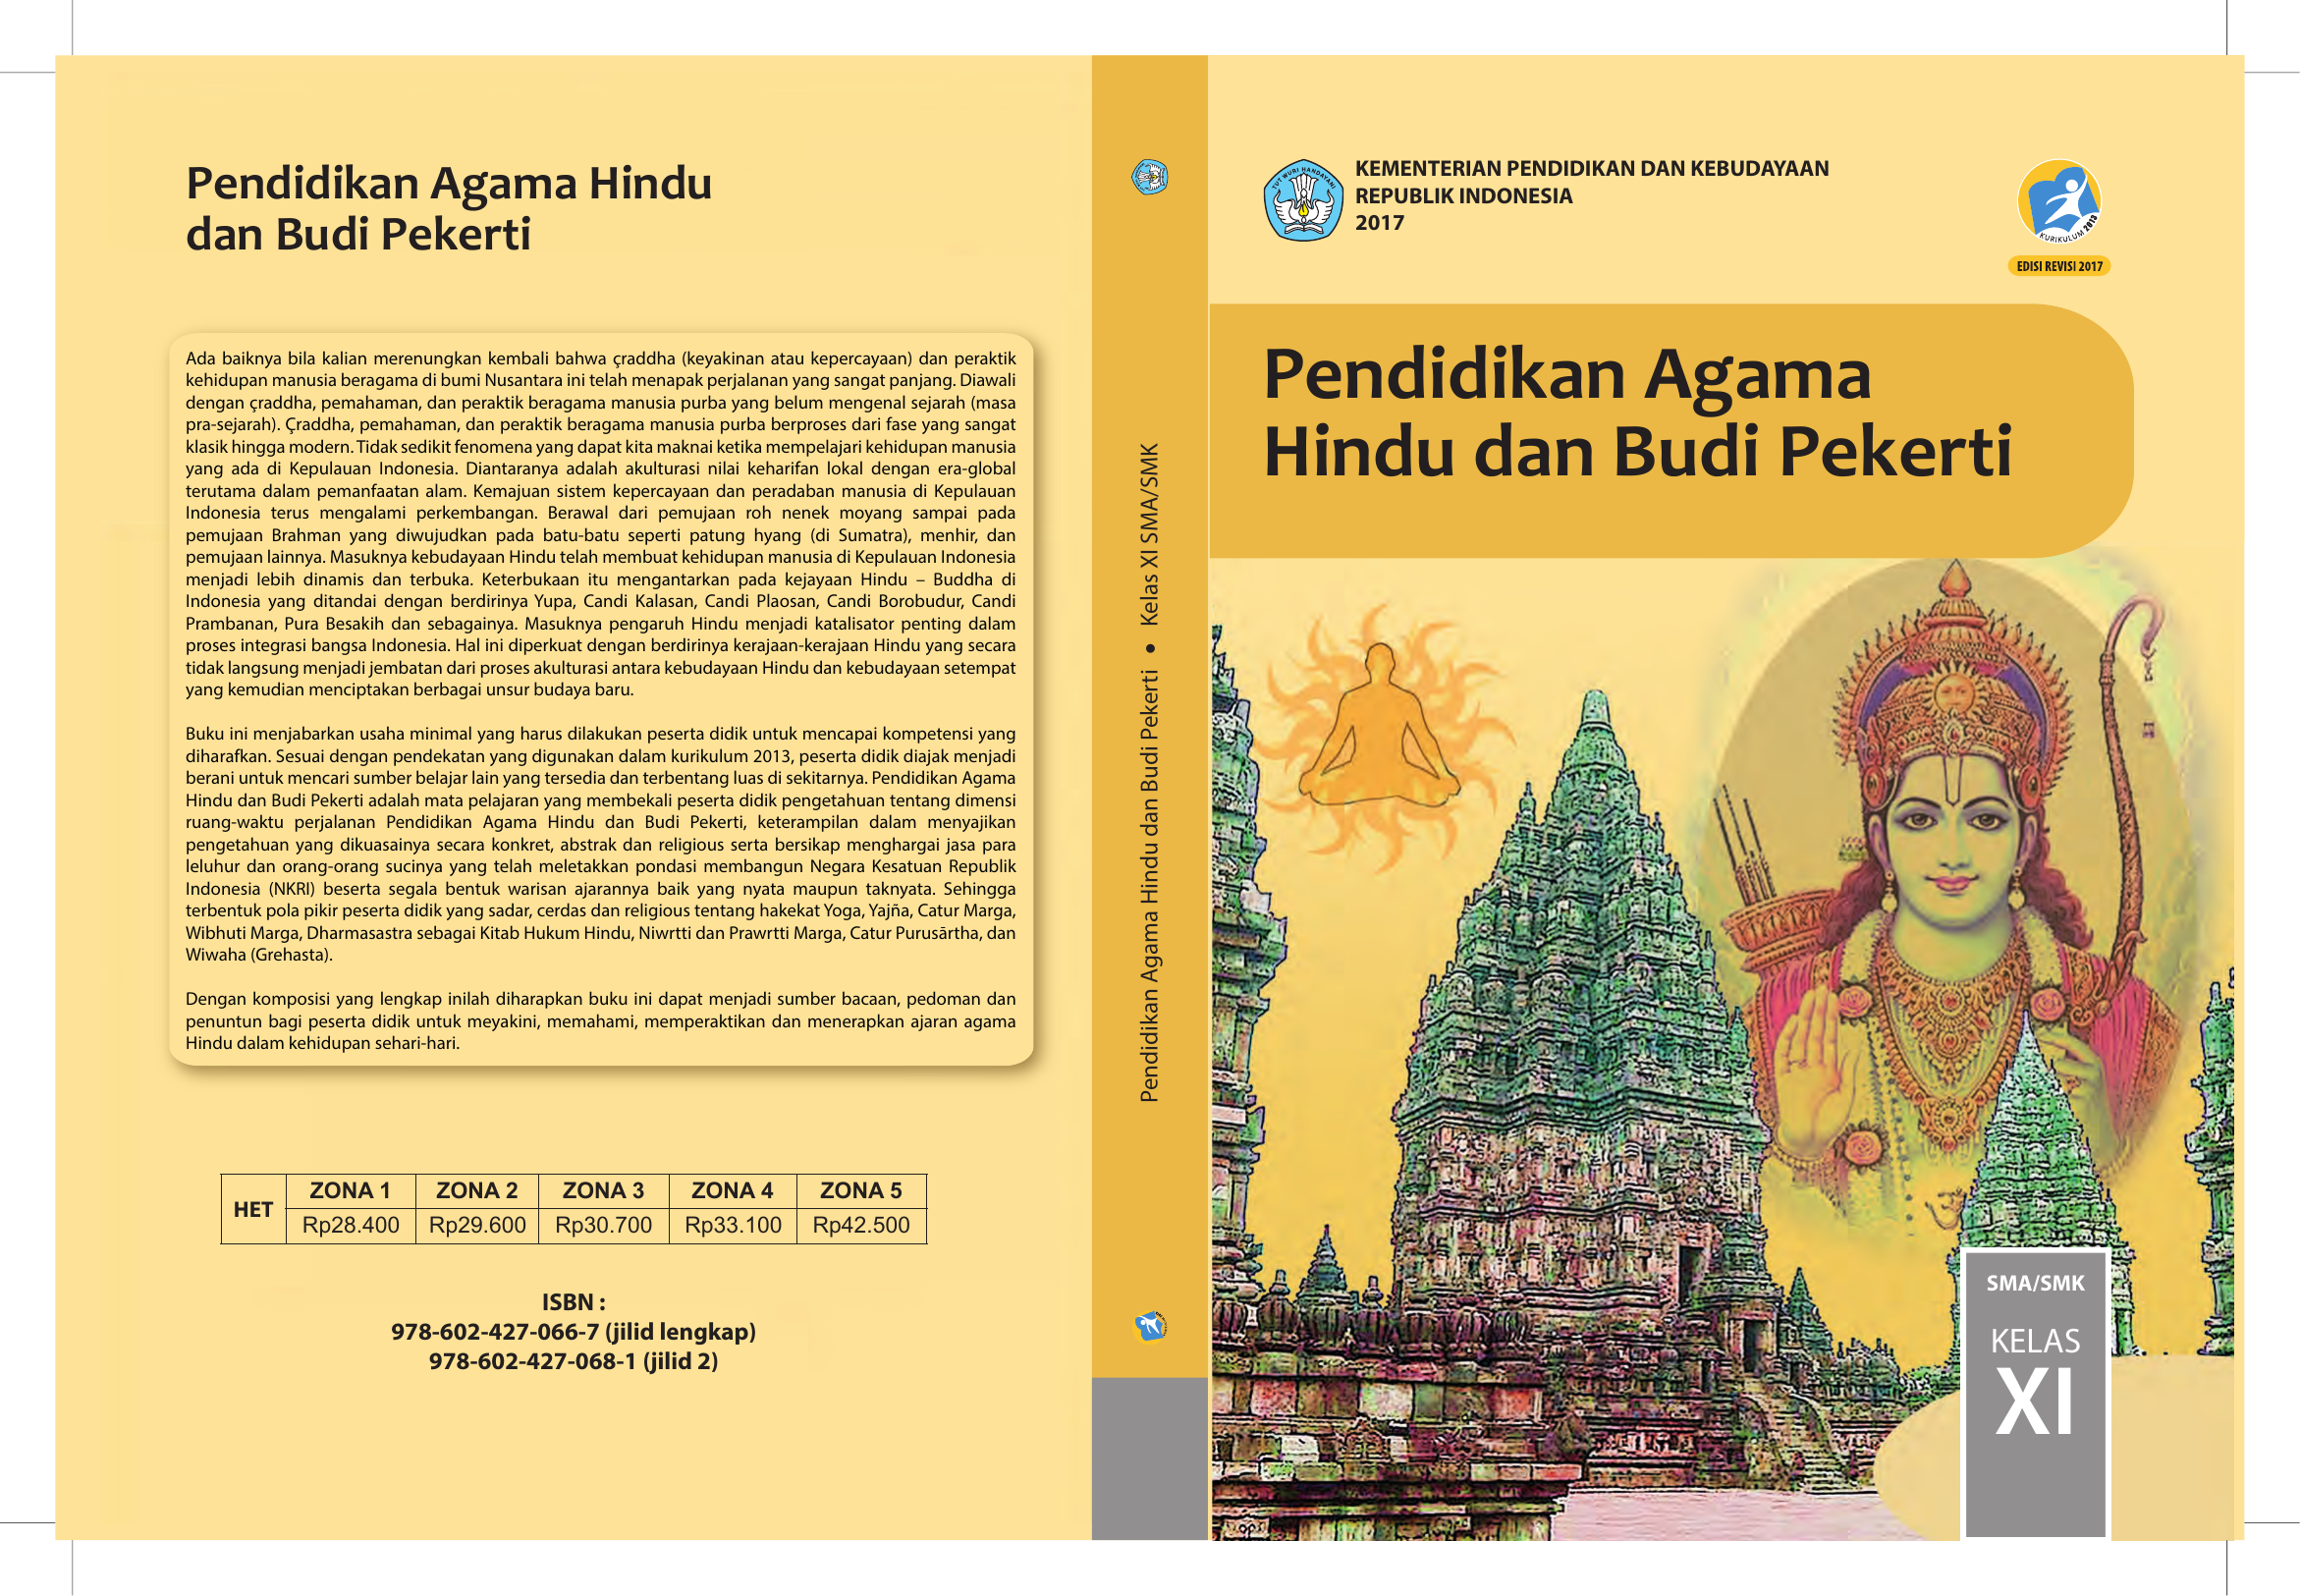 Pendidikan Agama Hindu Dan Budi Pekerti